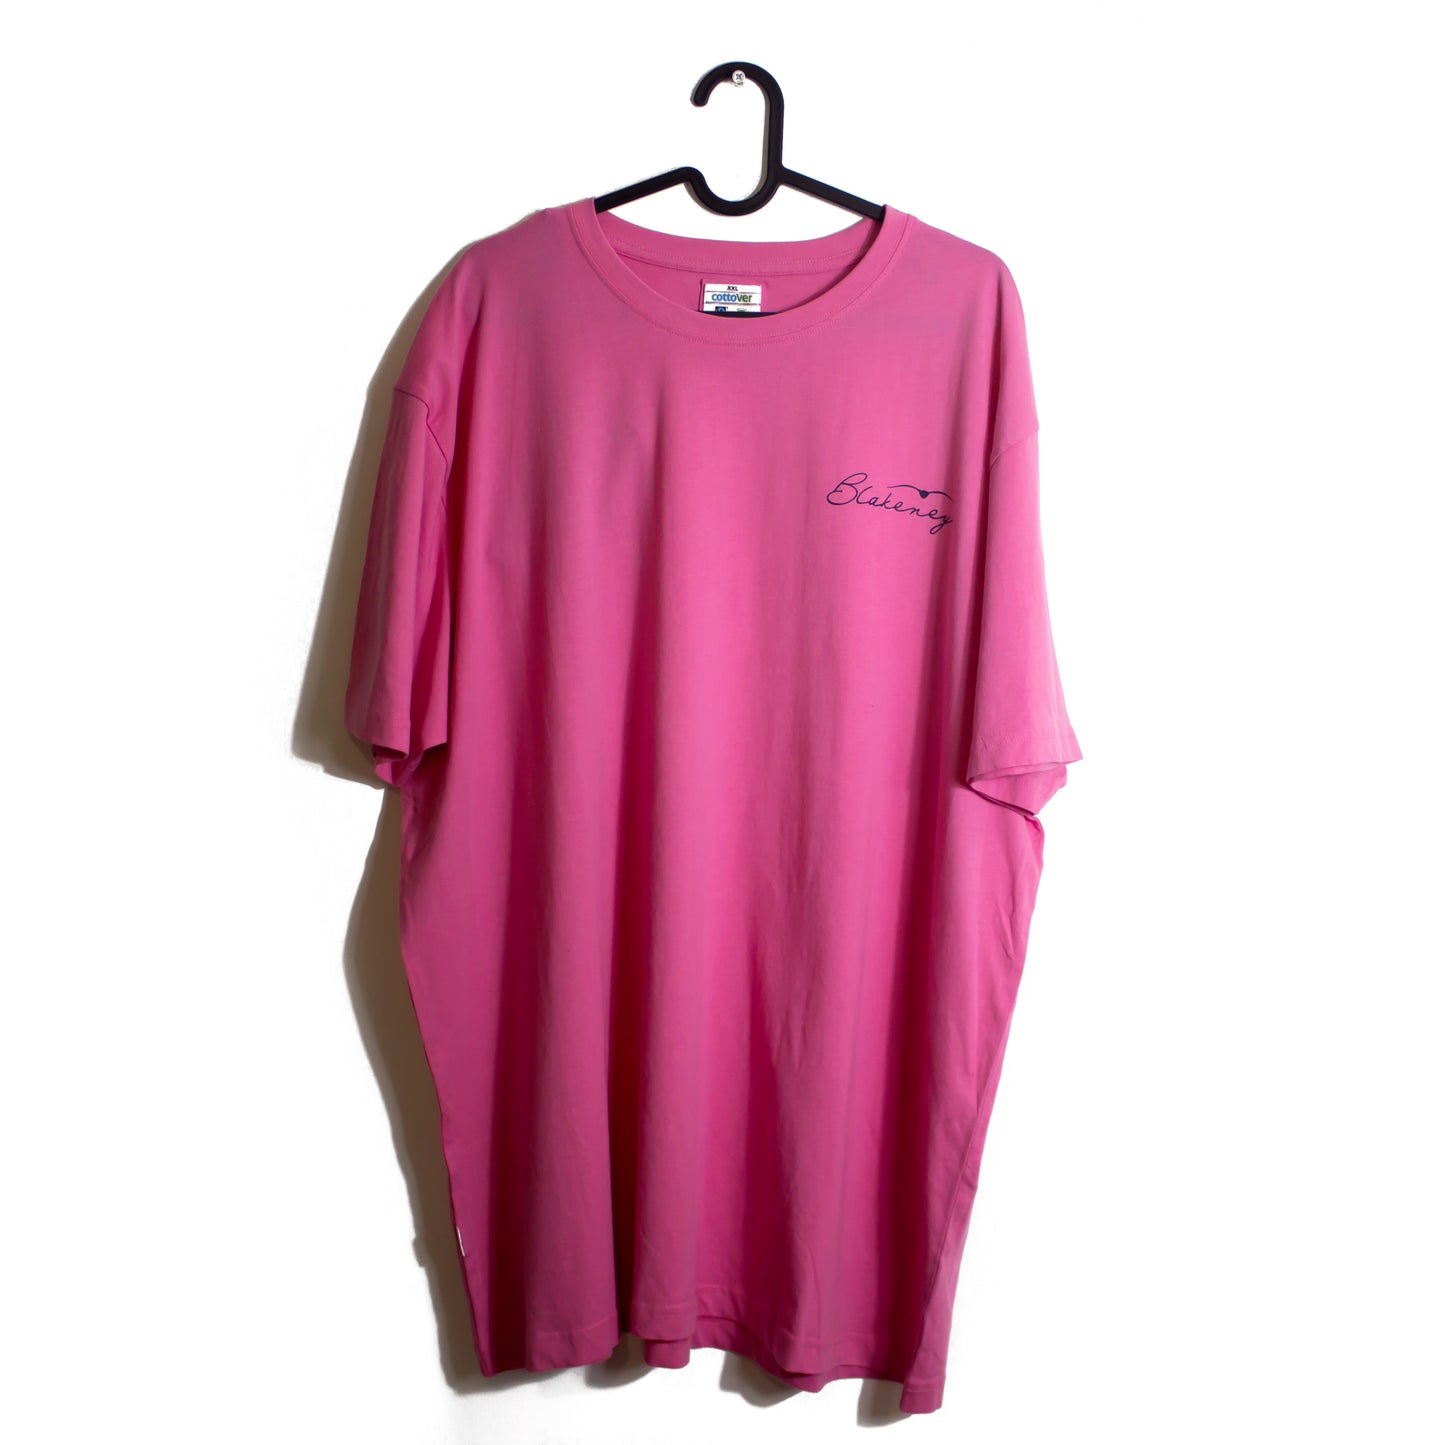 Men’s Pink Blakeney Bird short sleeve T-shirt